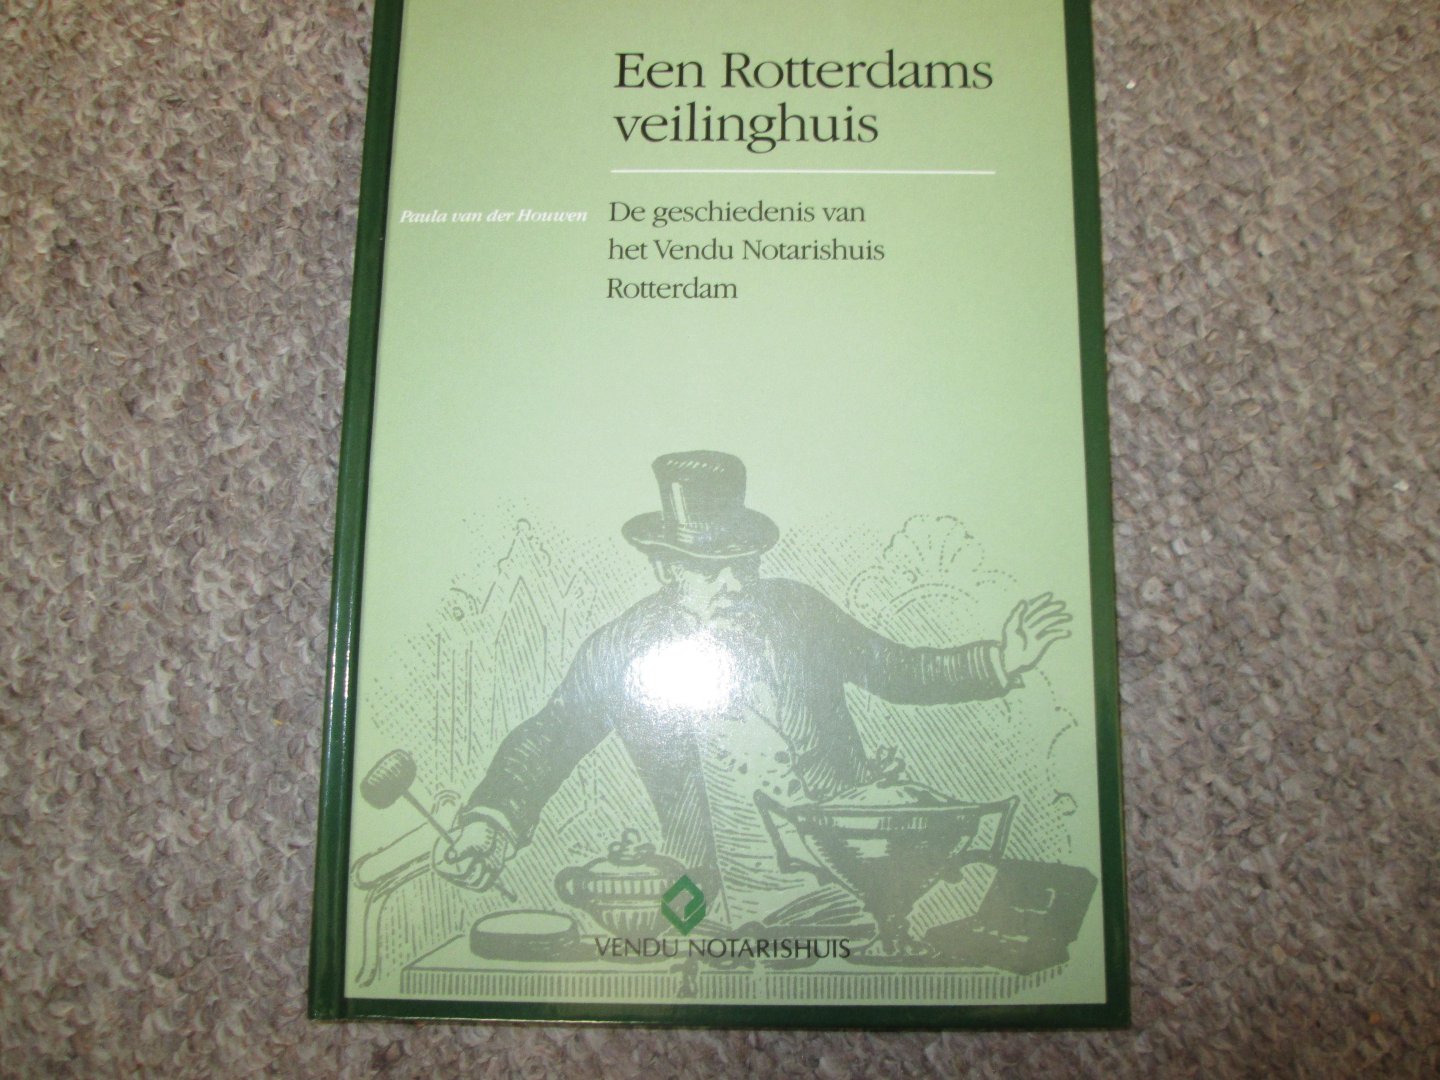 Houwen , Paula van der / Centrum voor Bedrijfsgeschiedenis Erasmus Universiteit Rotterdam - EEN ROTTERDAMS VEILINGHUIS ; de geschiedenis van het Vendu Notarishuis Rotterdam